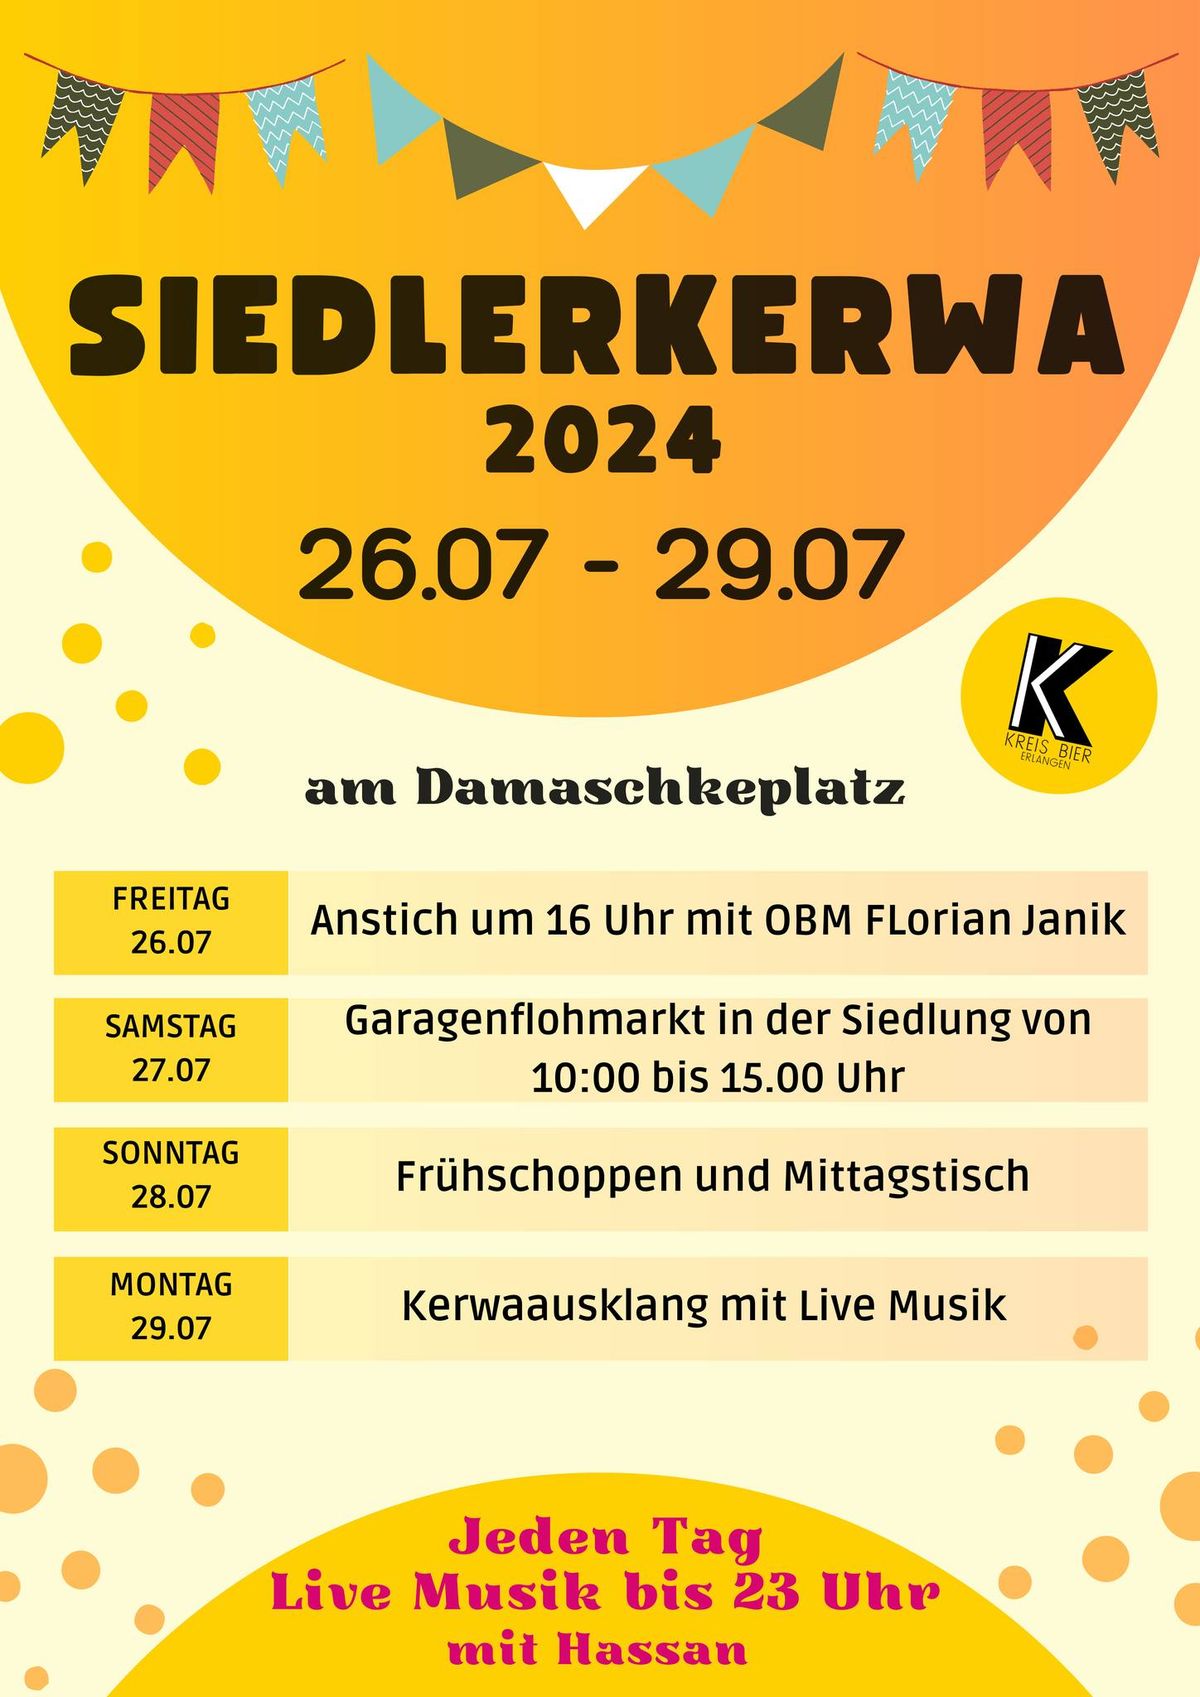 Siedlerkerwa 2024